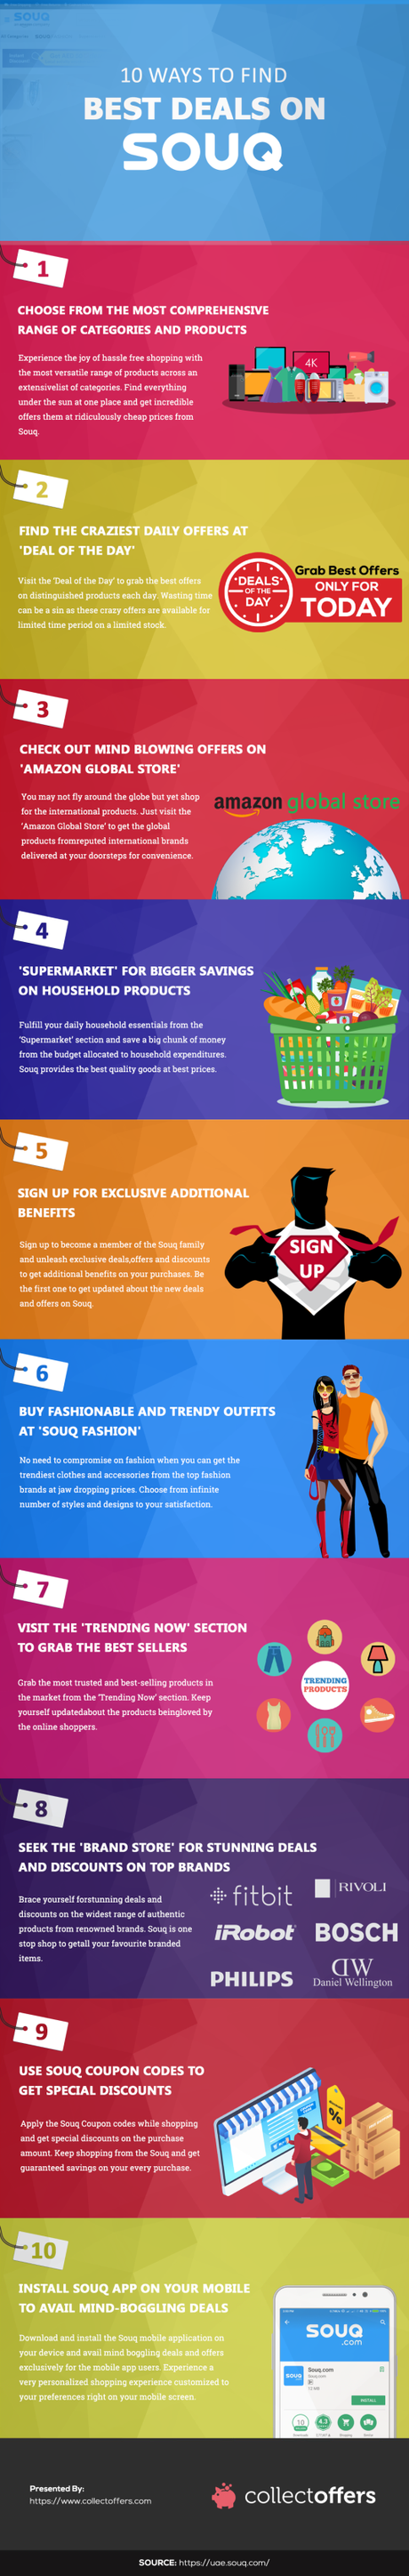 10 Easy Ways To Find Best Deals On Souq!